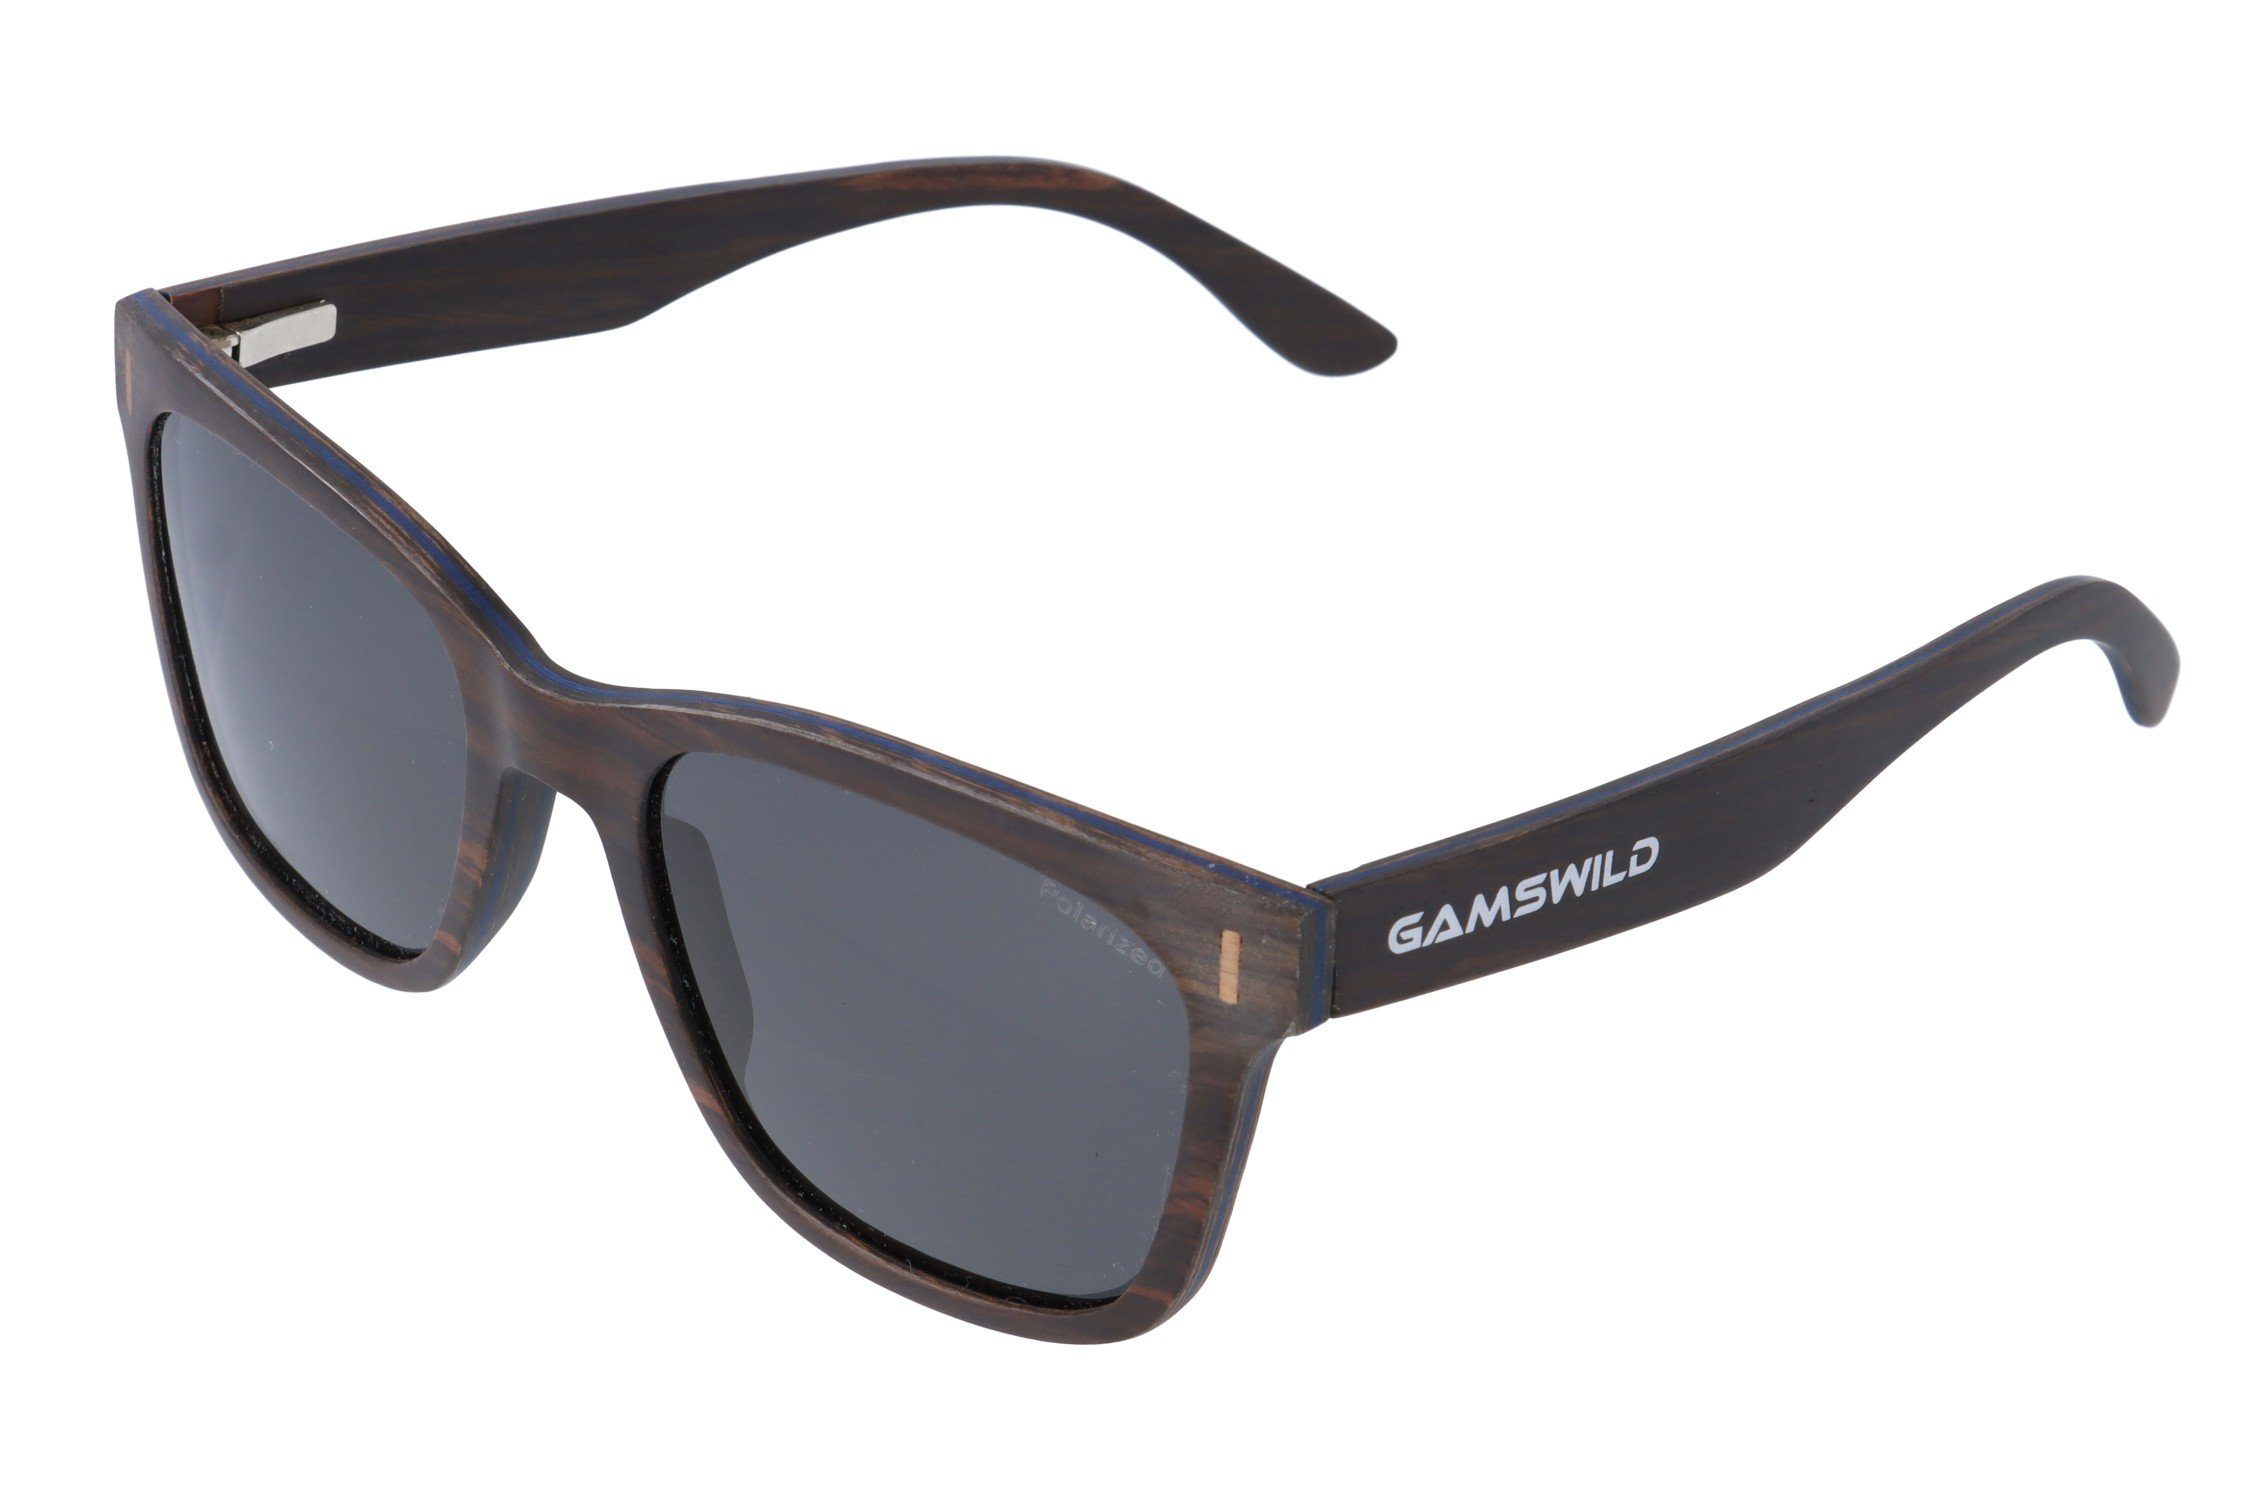 Gamswild Sonnenbrille UV400 GAMSSTYLE Holzbrille polarisierte Gläser Damen  Herren Unisex, Modell WM0011 in braun, grau, blau & G15